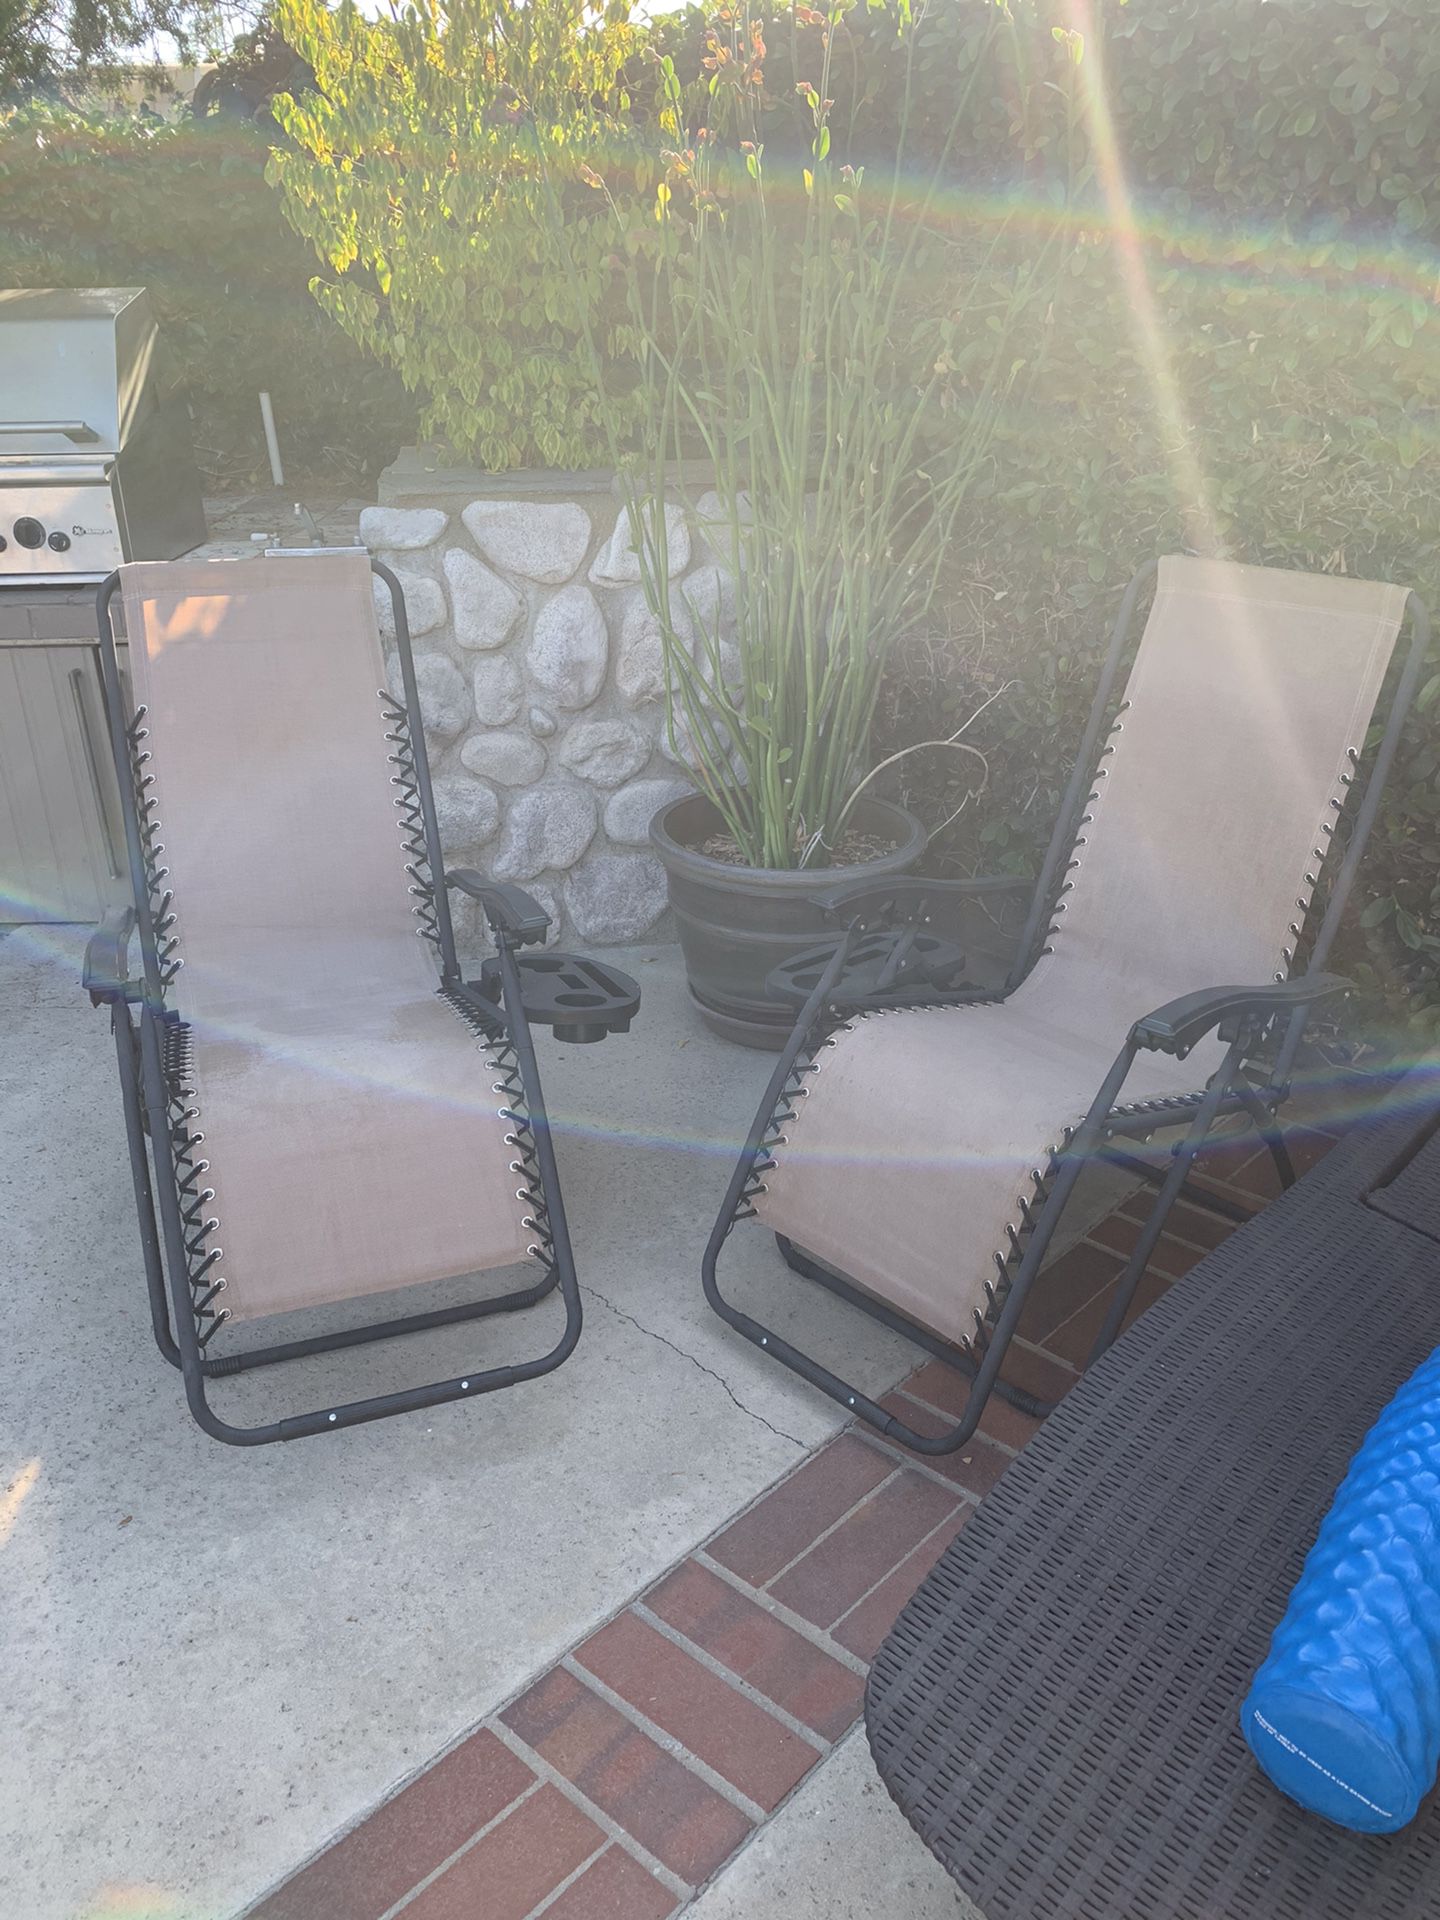 Pair of zero gravity chairs